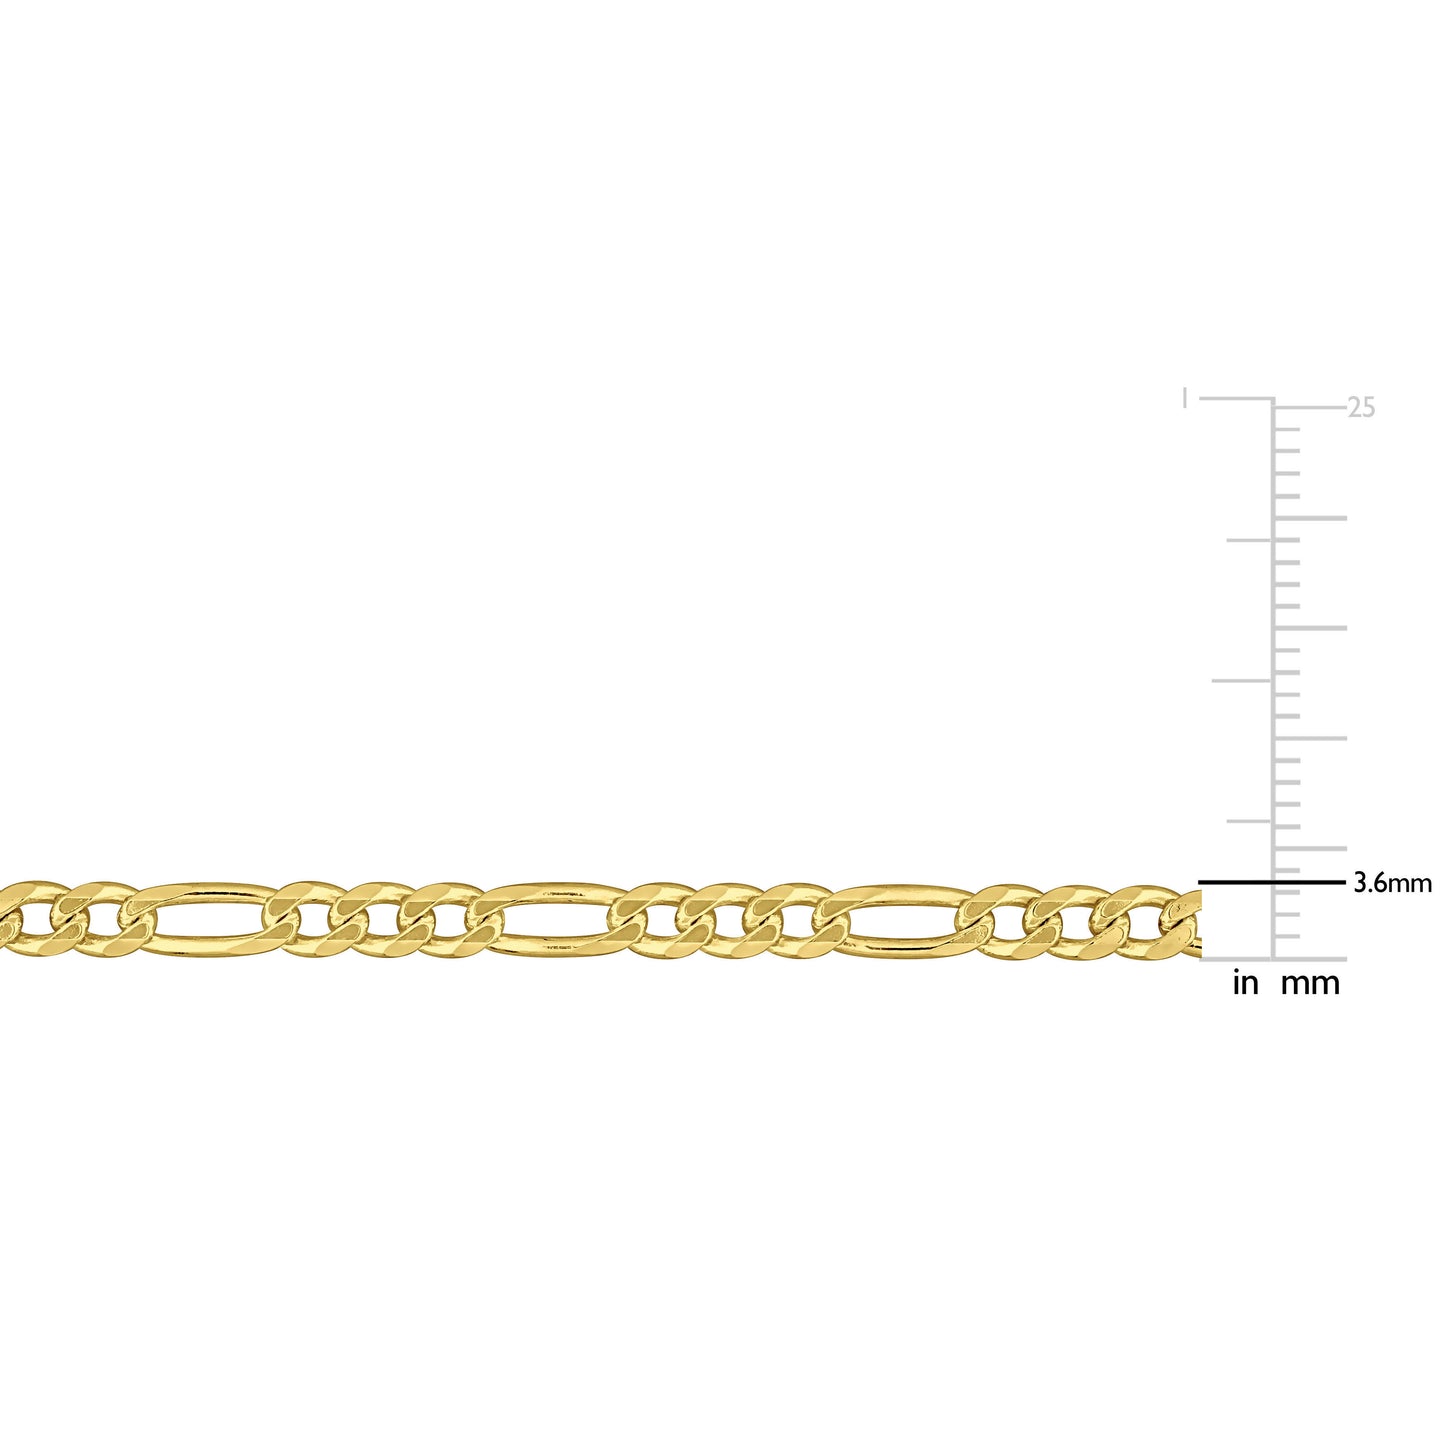 Figaro Chain Bracelet in 3.6mm in Yellow Silver